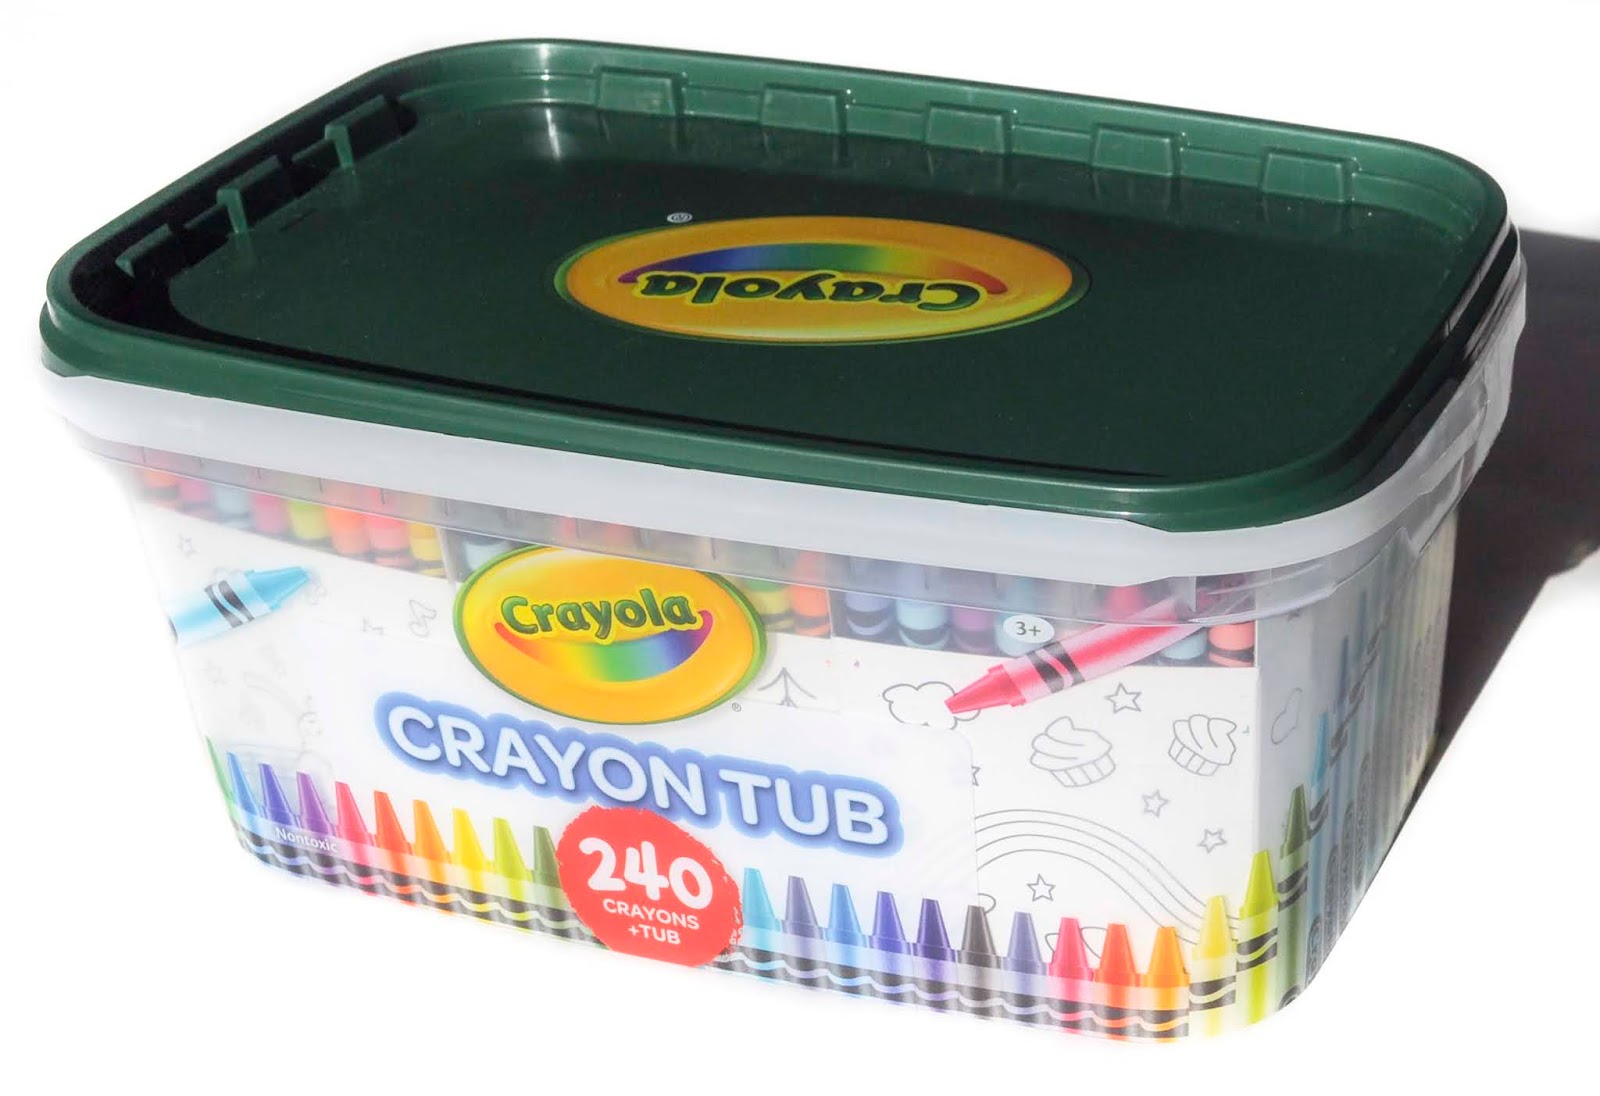 240 Count Crayola Crayon Tub